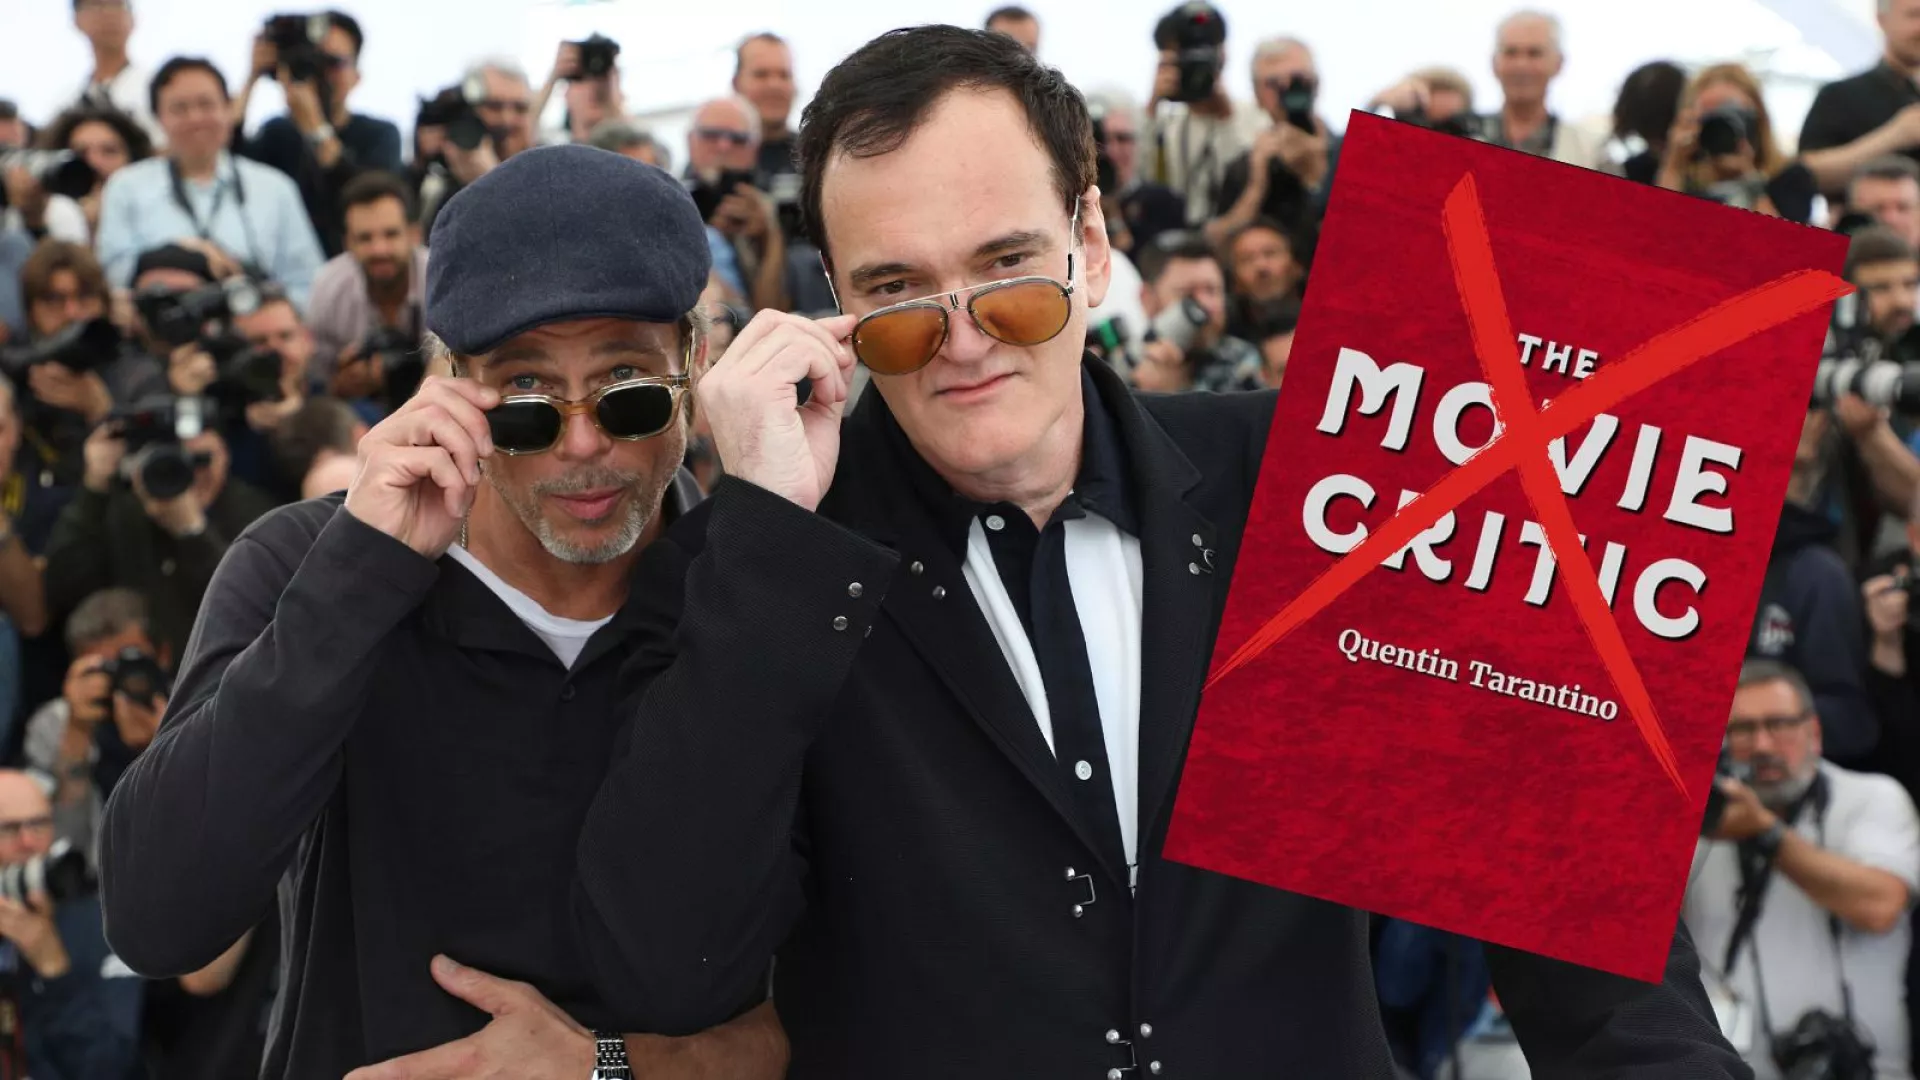 Quentin Tarantino heq dorë nga filmi i tij i fundit ‘The Movie Critic’. Po tani?